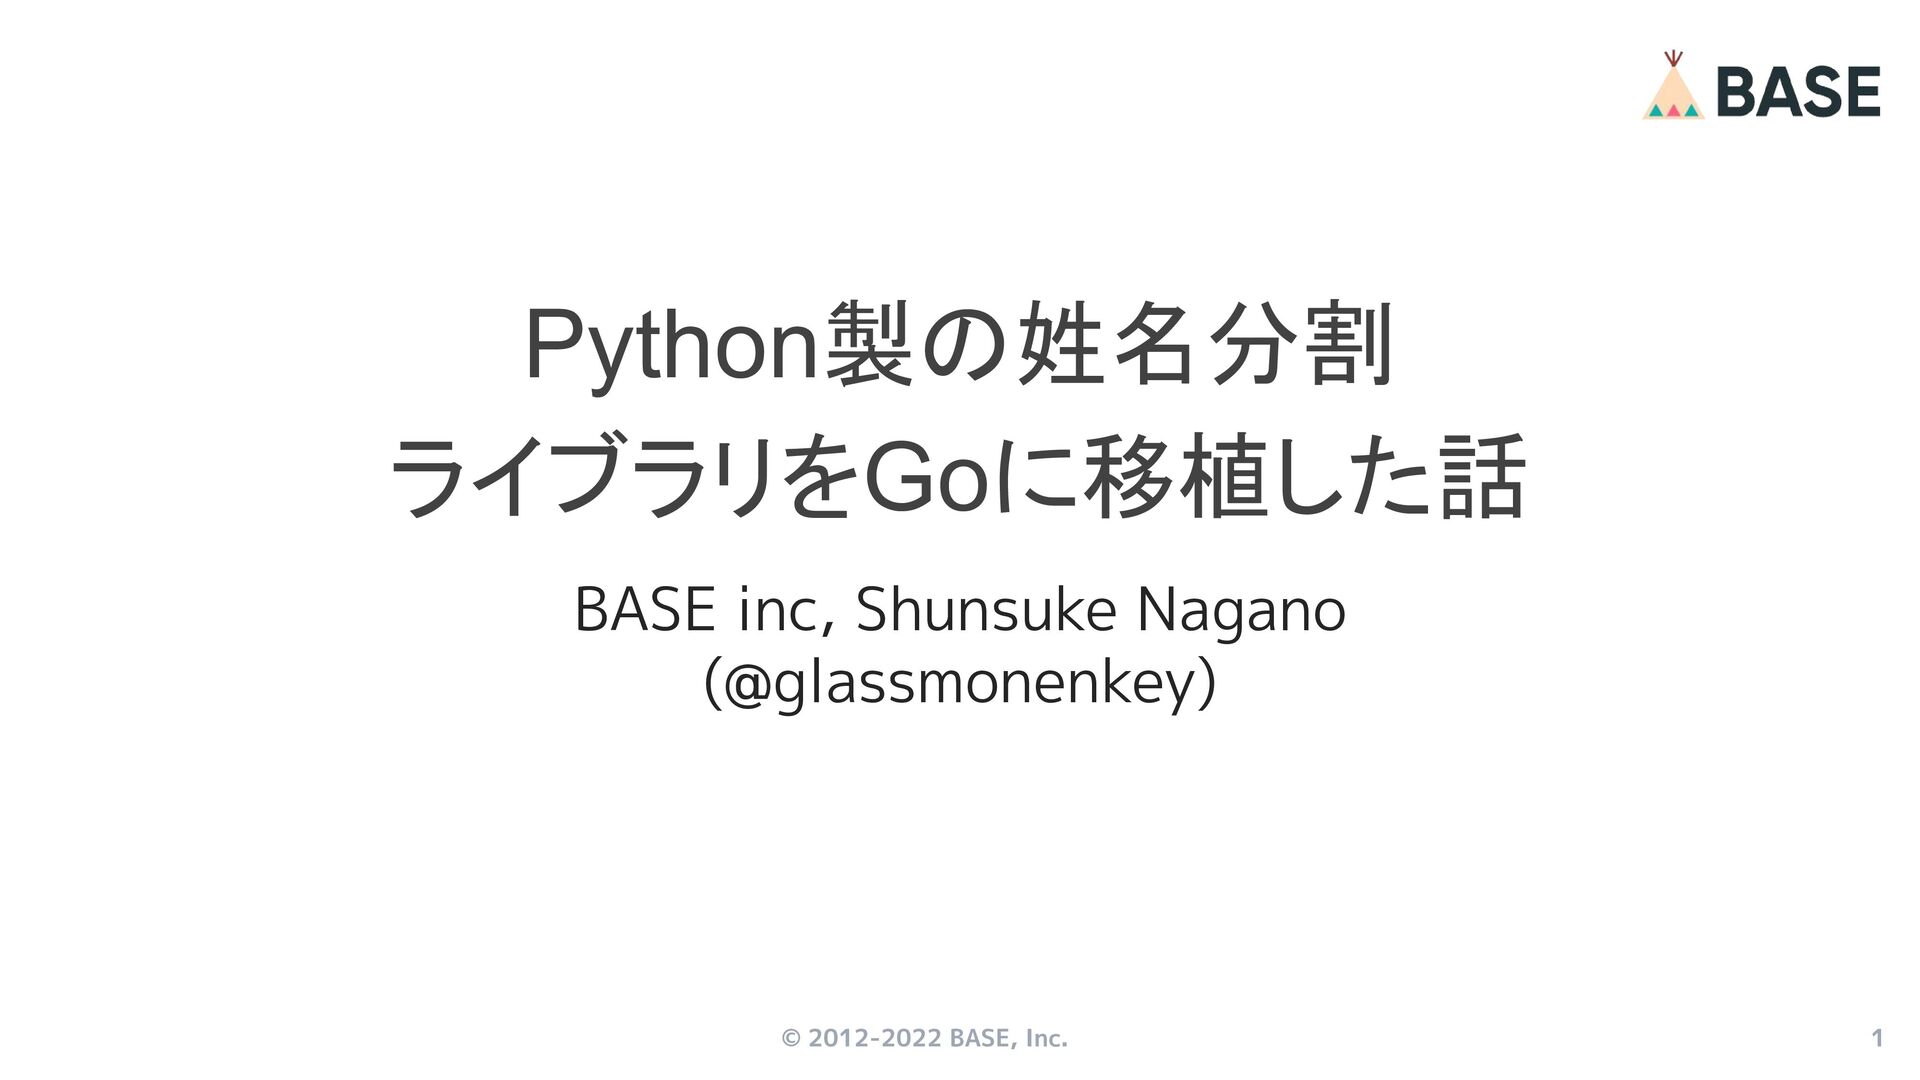 Python製の姓名分割 ライブラリをGoに移植した話